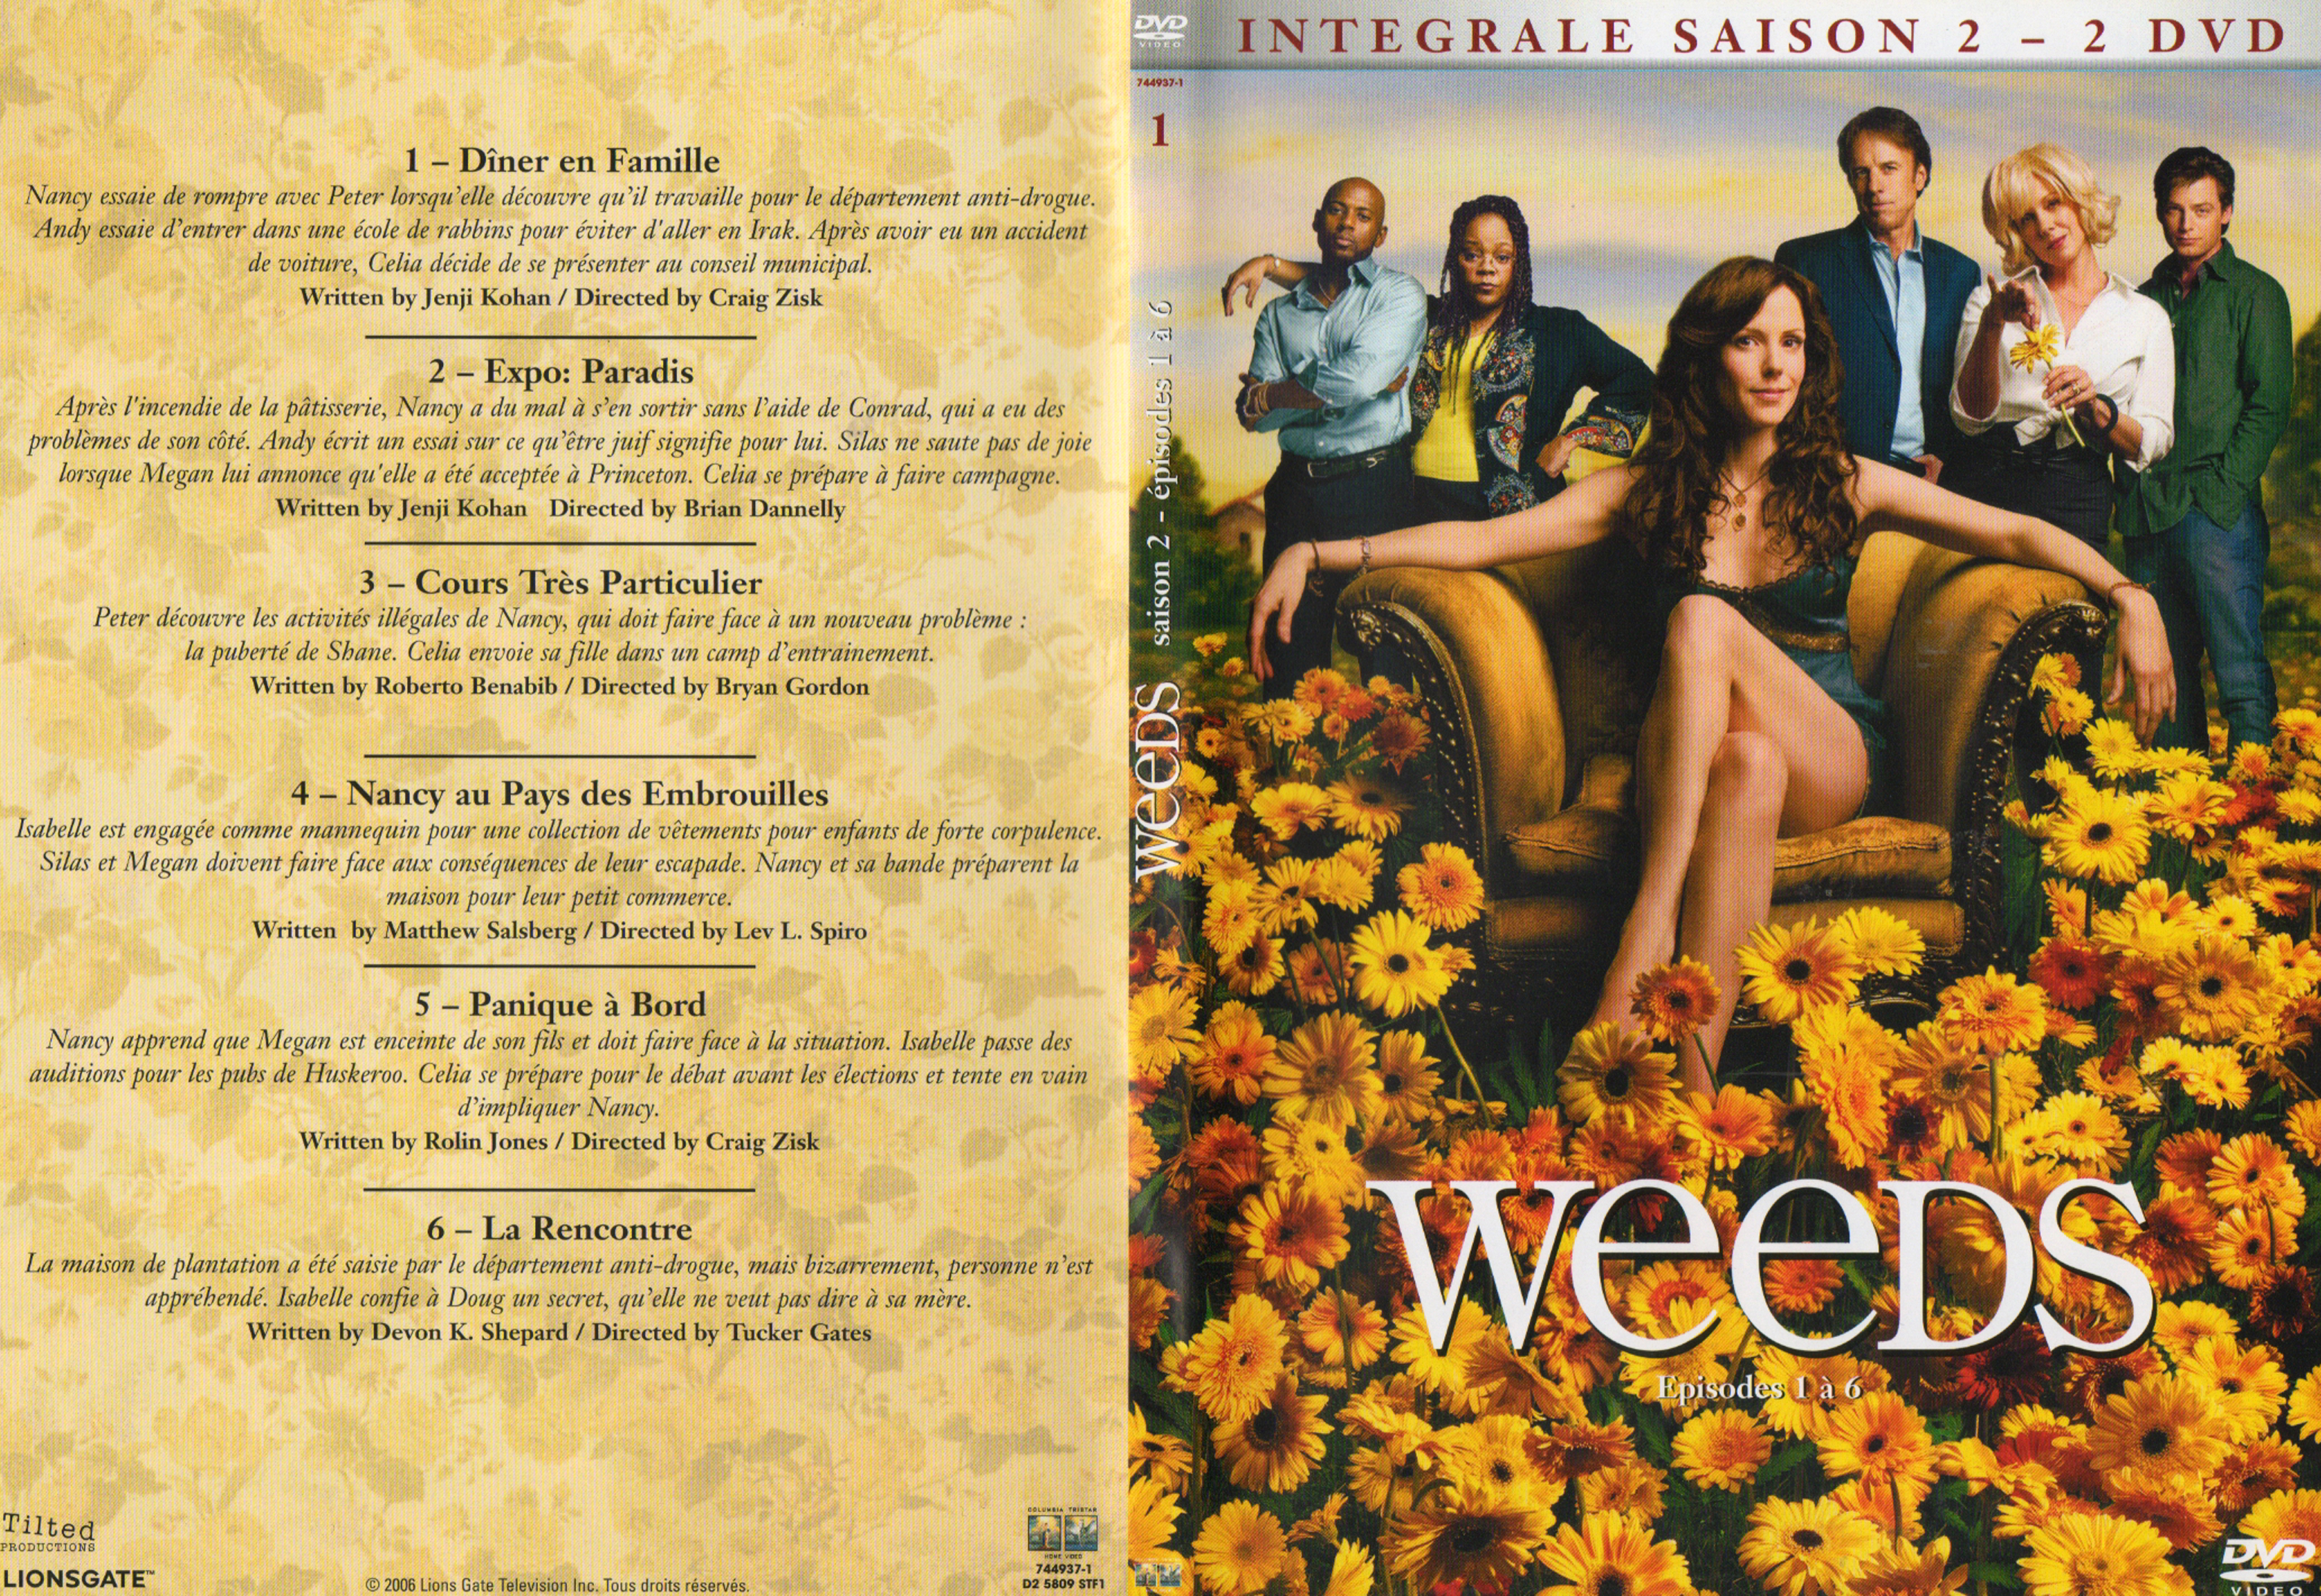 Jaquette DVD Weeds Saison 2 DVD 1